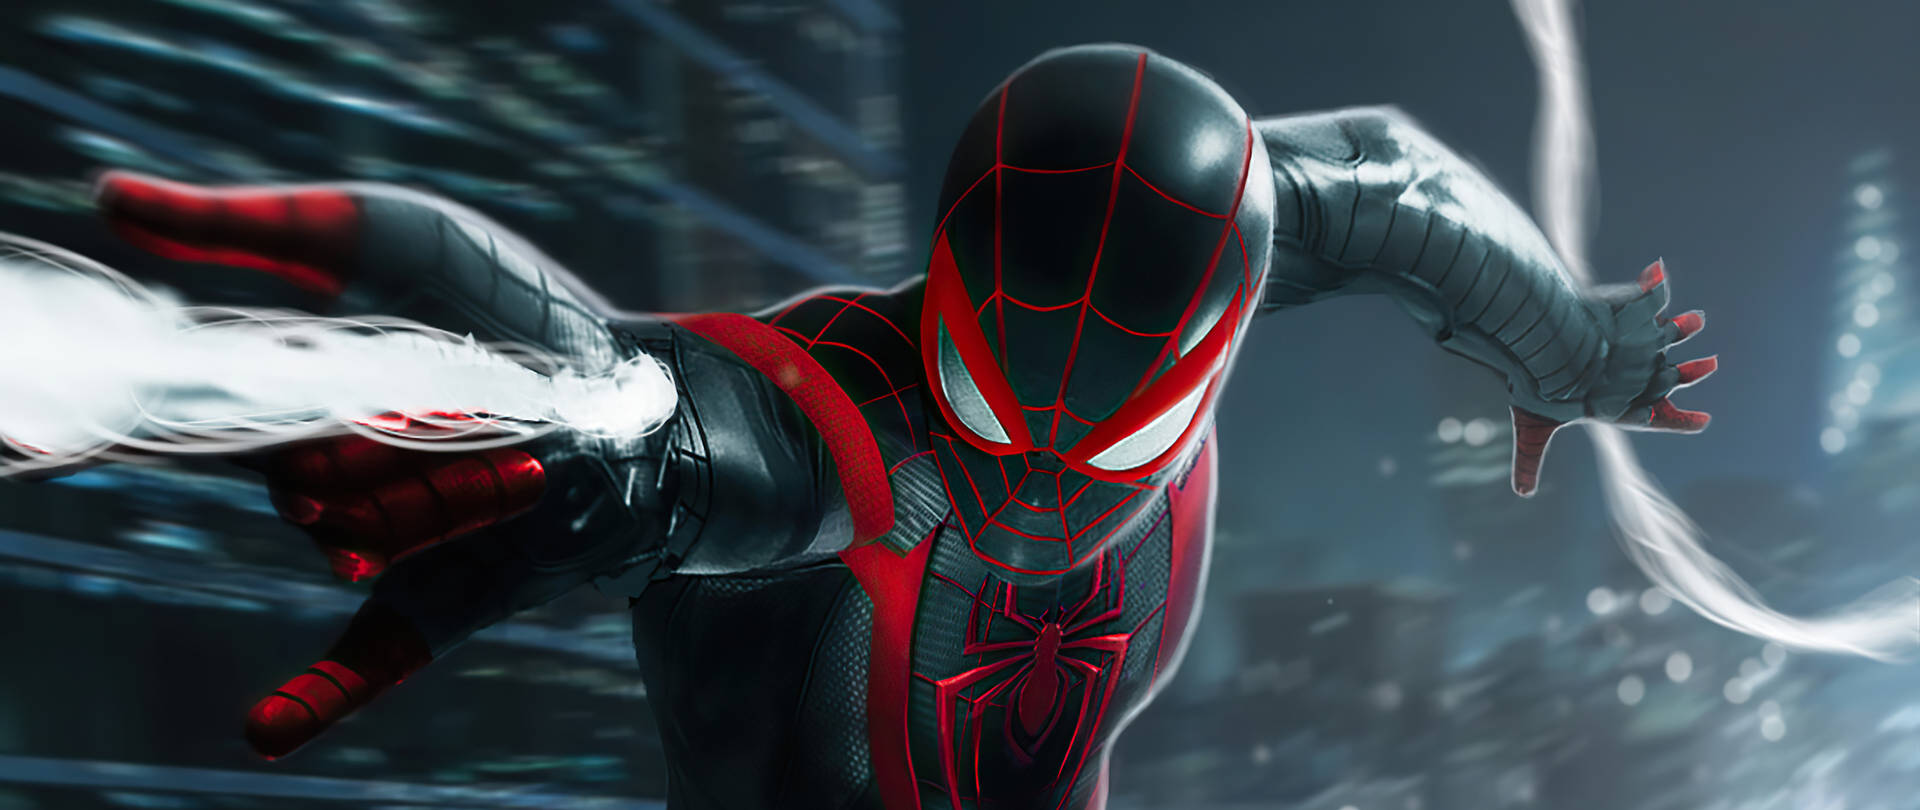 Black Spiderman Shooting Webs Wallpaper